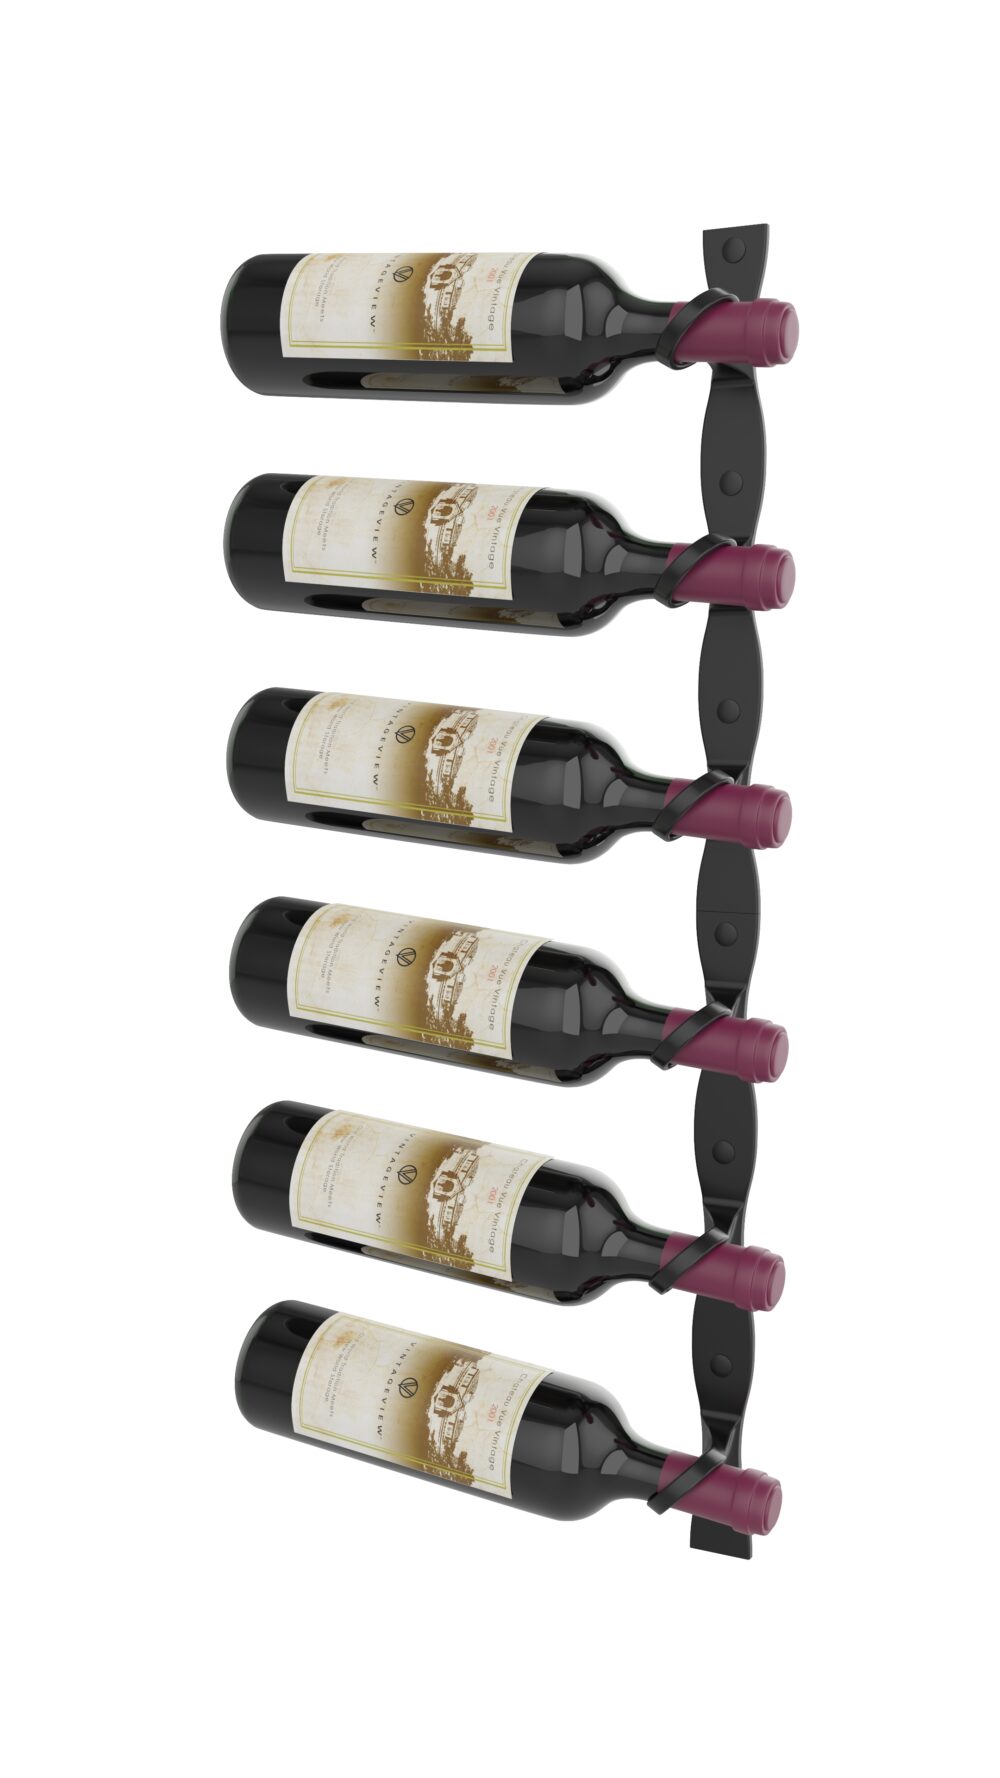 Vino Pins Metal Wine Rack - Wall Mounted Wine Racks by VintageView